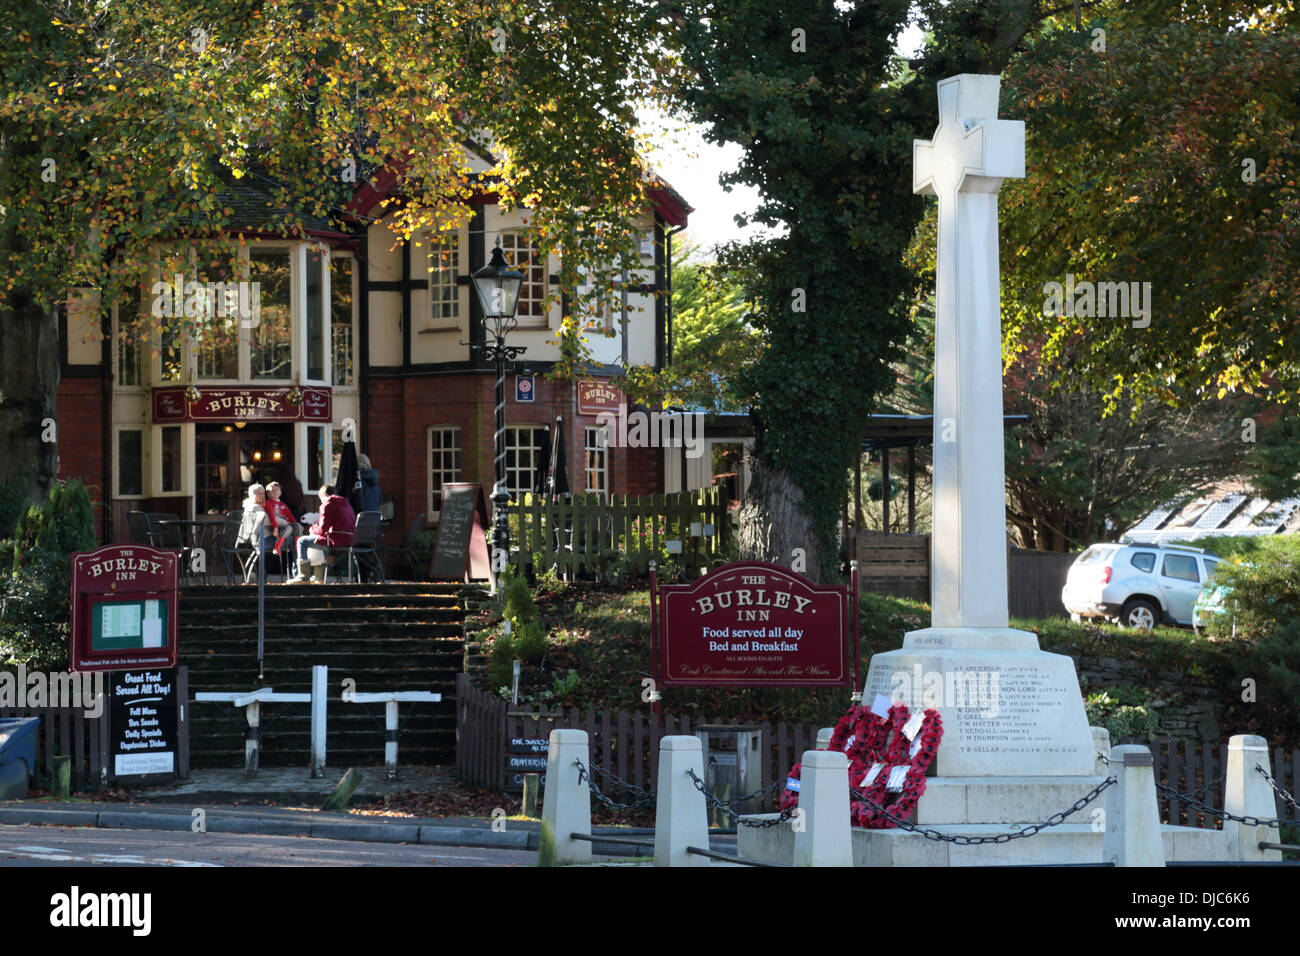 Monument commémoratif de guerre avec des couronnes de coquelicots - le nouveau village de Burley, Hampshire. Prise le Dimanche du souvenir 2013. Banque D'Images